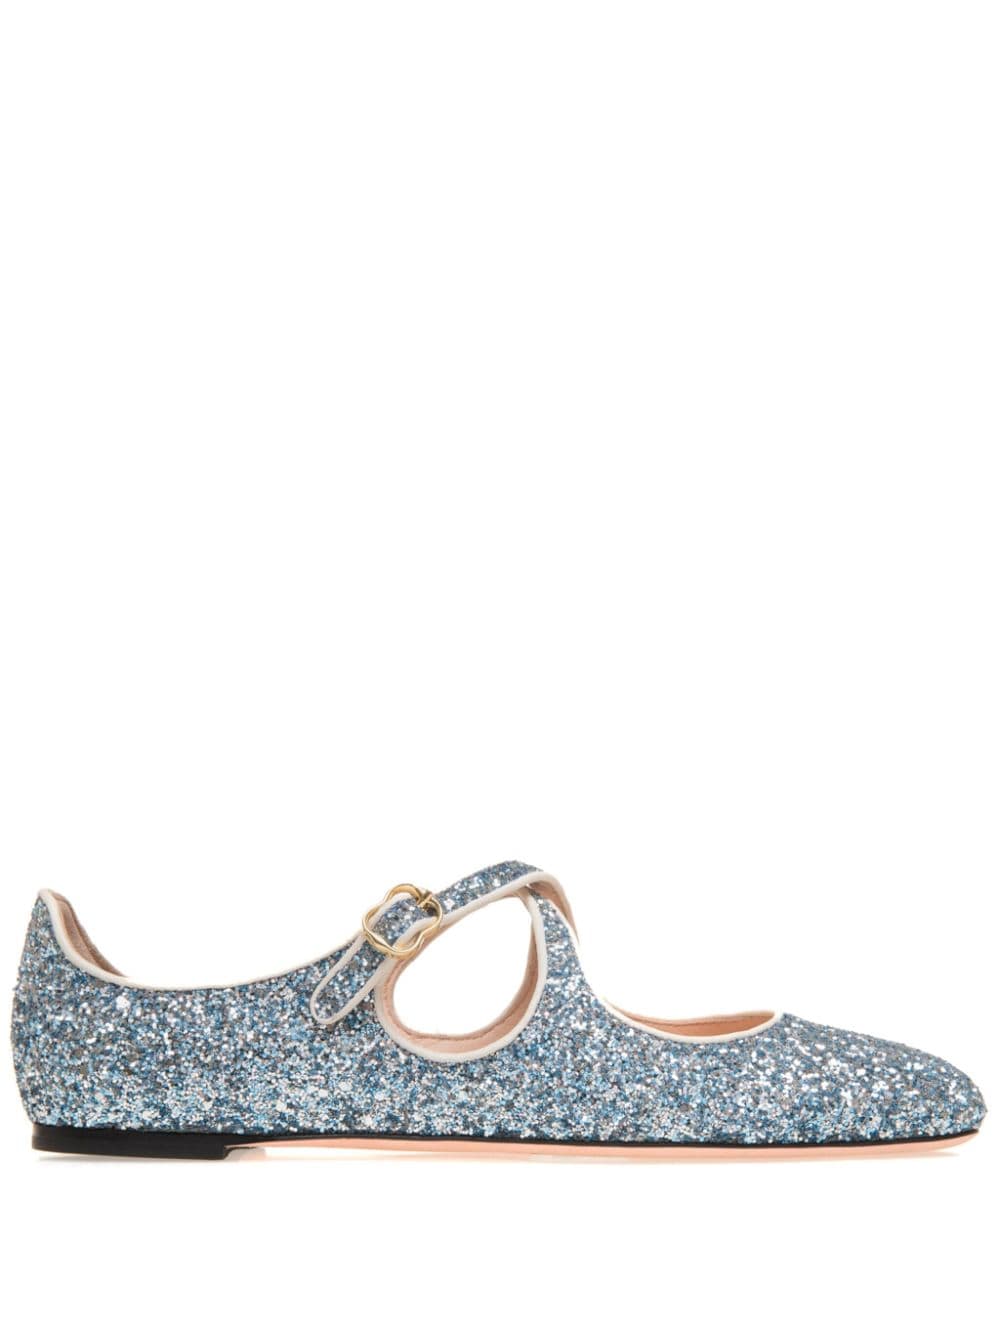 glitter-embellished ballerina shoes